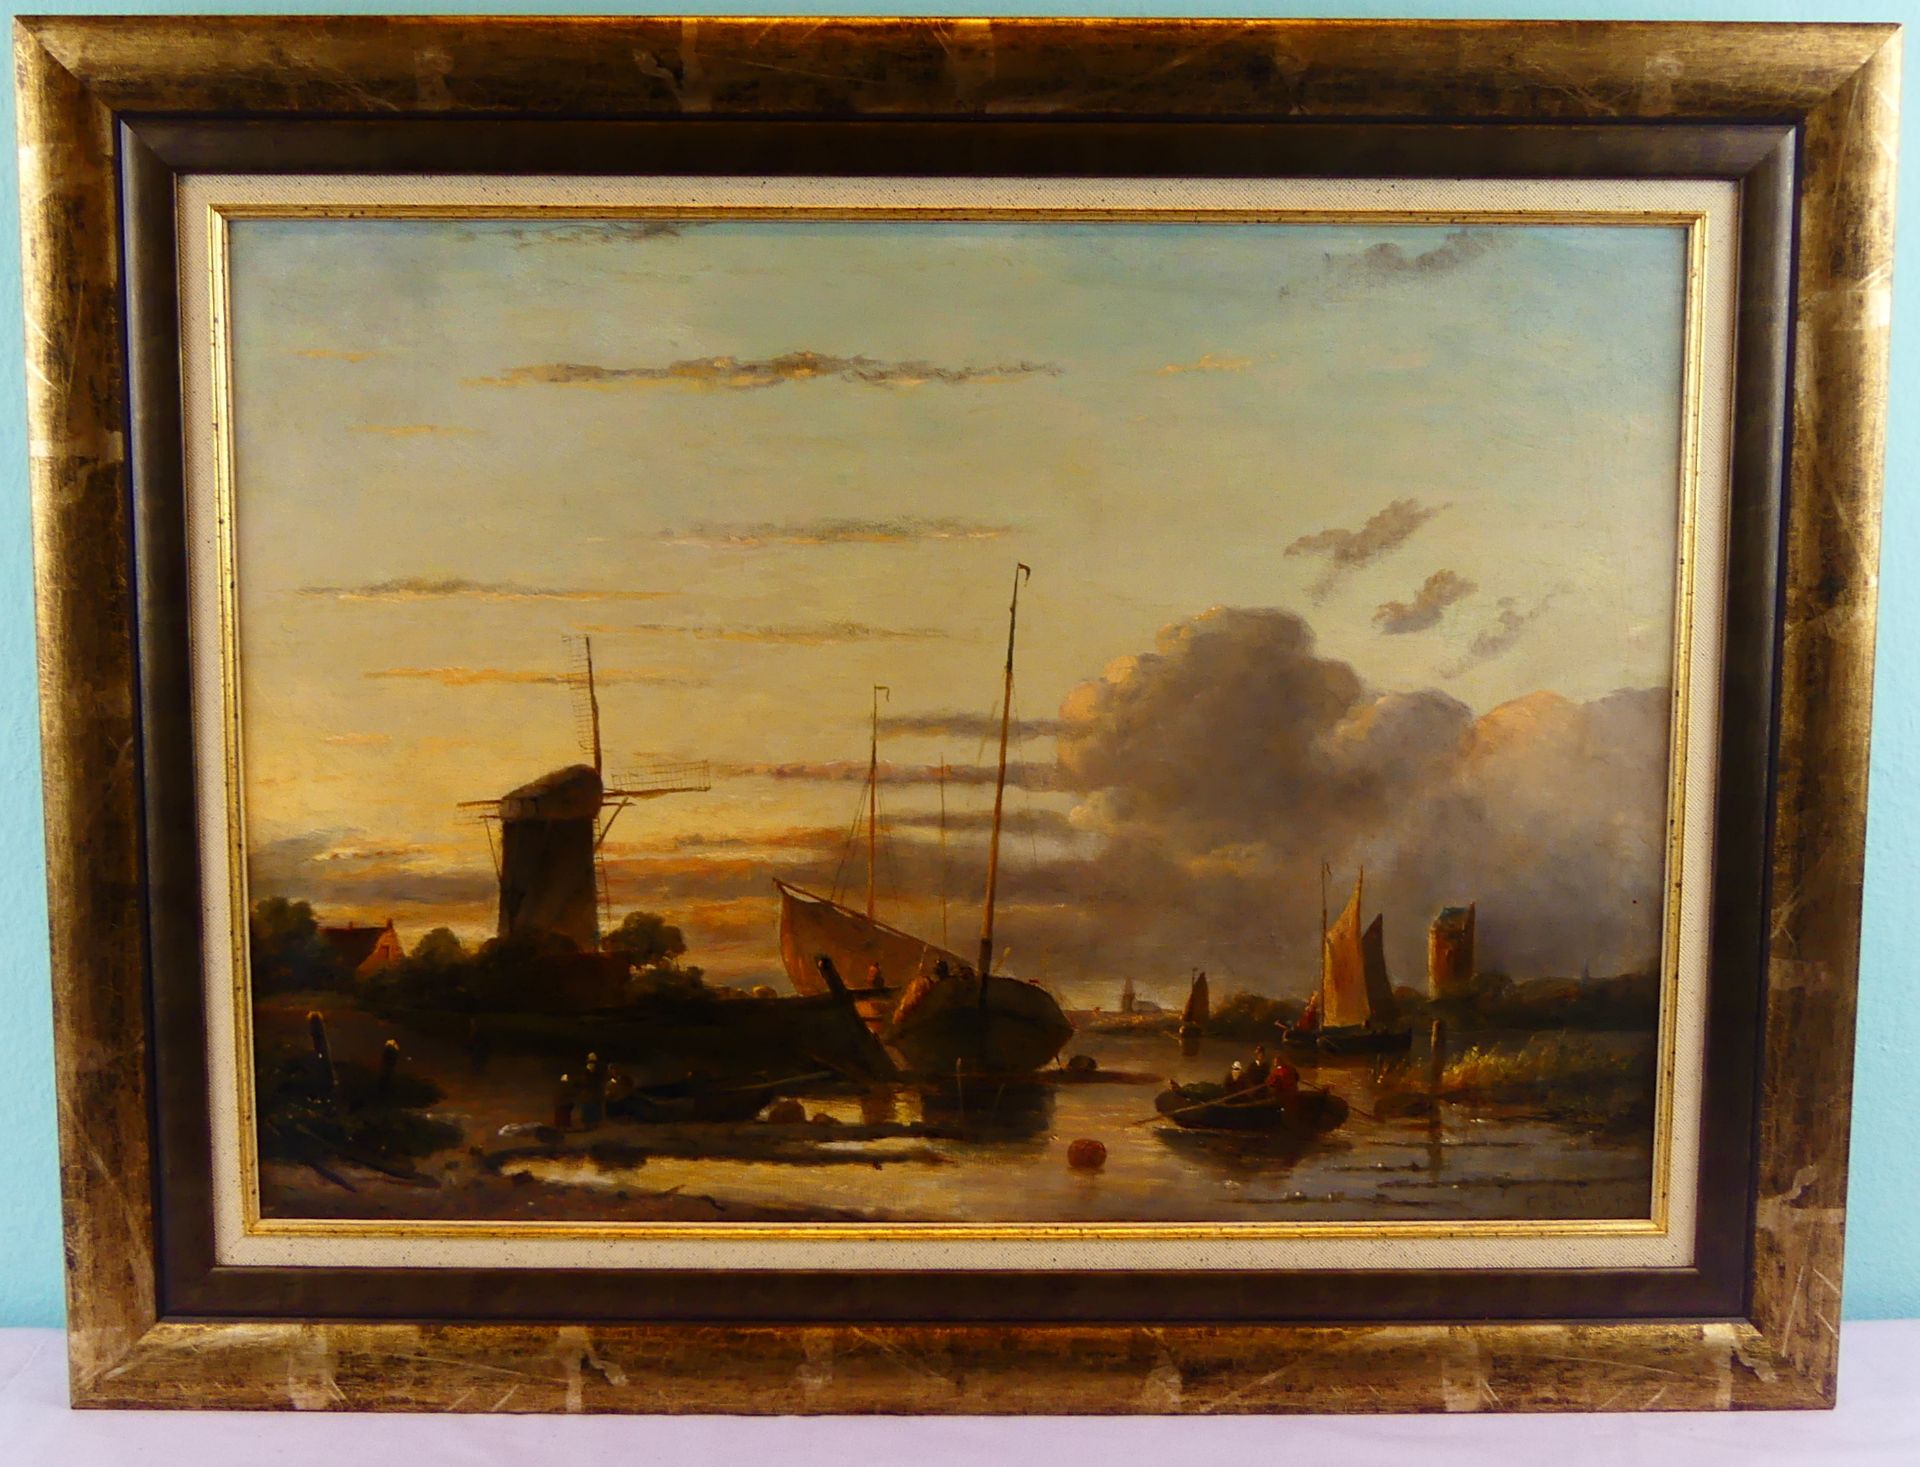 CHARLES LEICKERT (1818-1907), "Holländische Flusslandschaft", Öl/L,